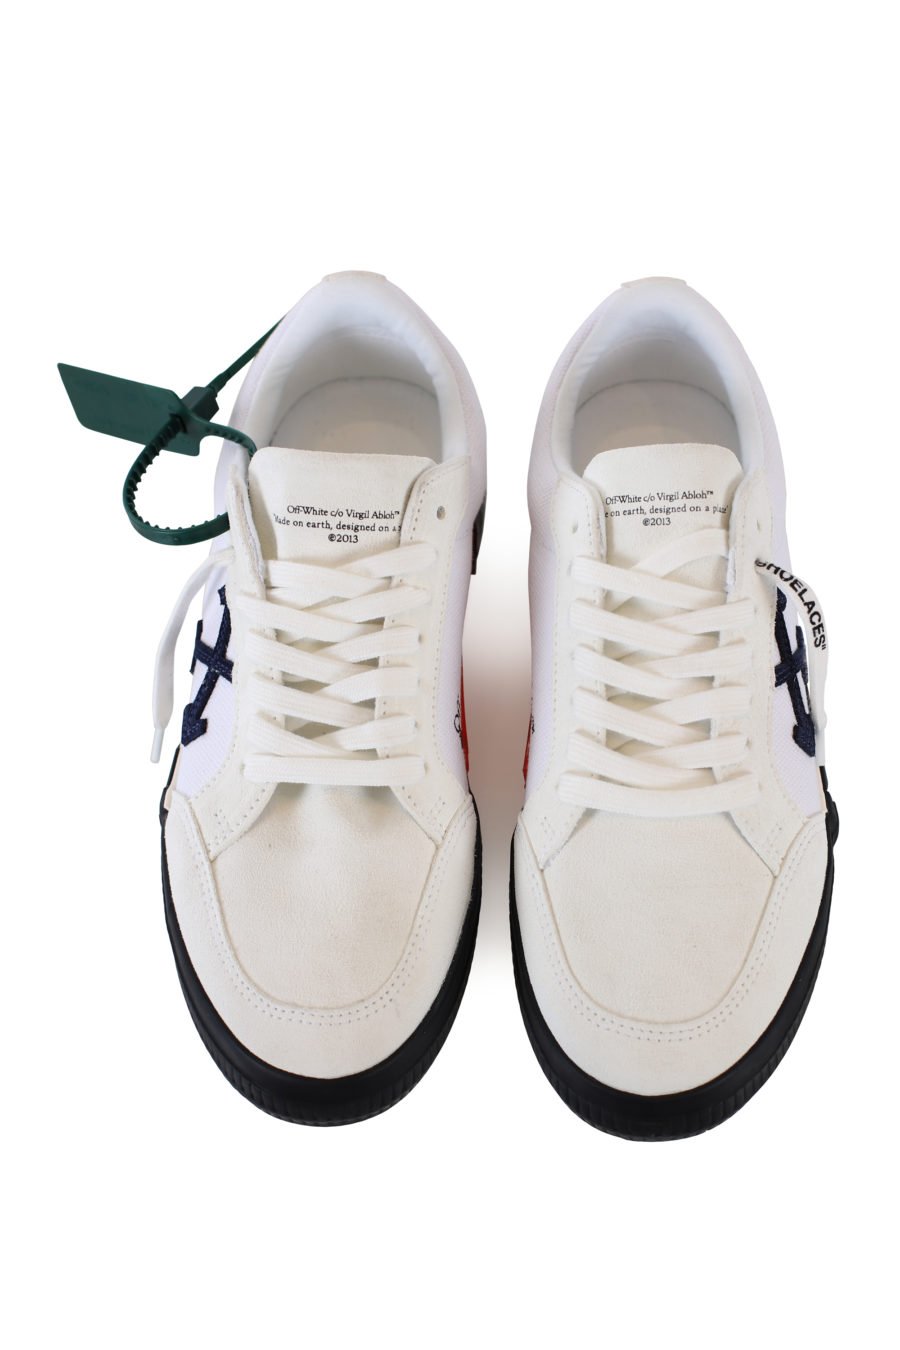 Weiße "vulkanisierte" Schuhe mit blauen Pfeilen - IMG 2230